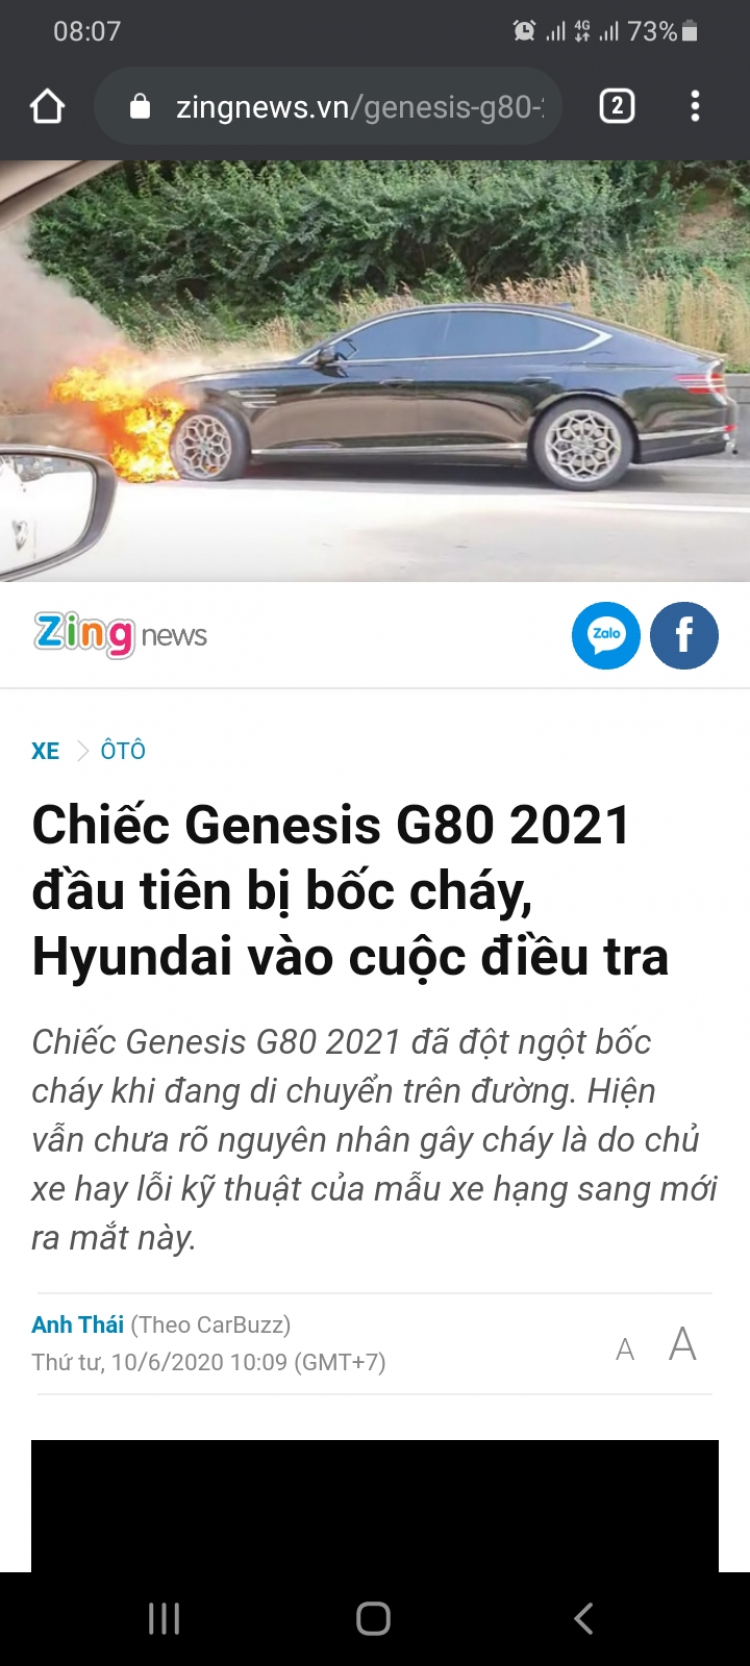 Genesis G80 2021 báo giá 60.000 USD tại Úc